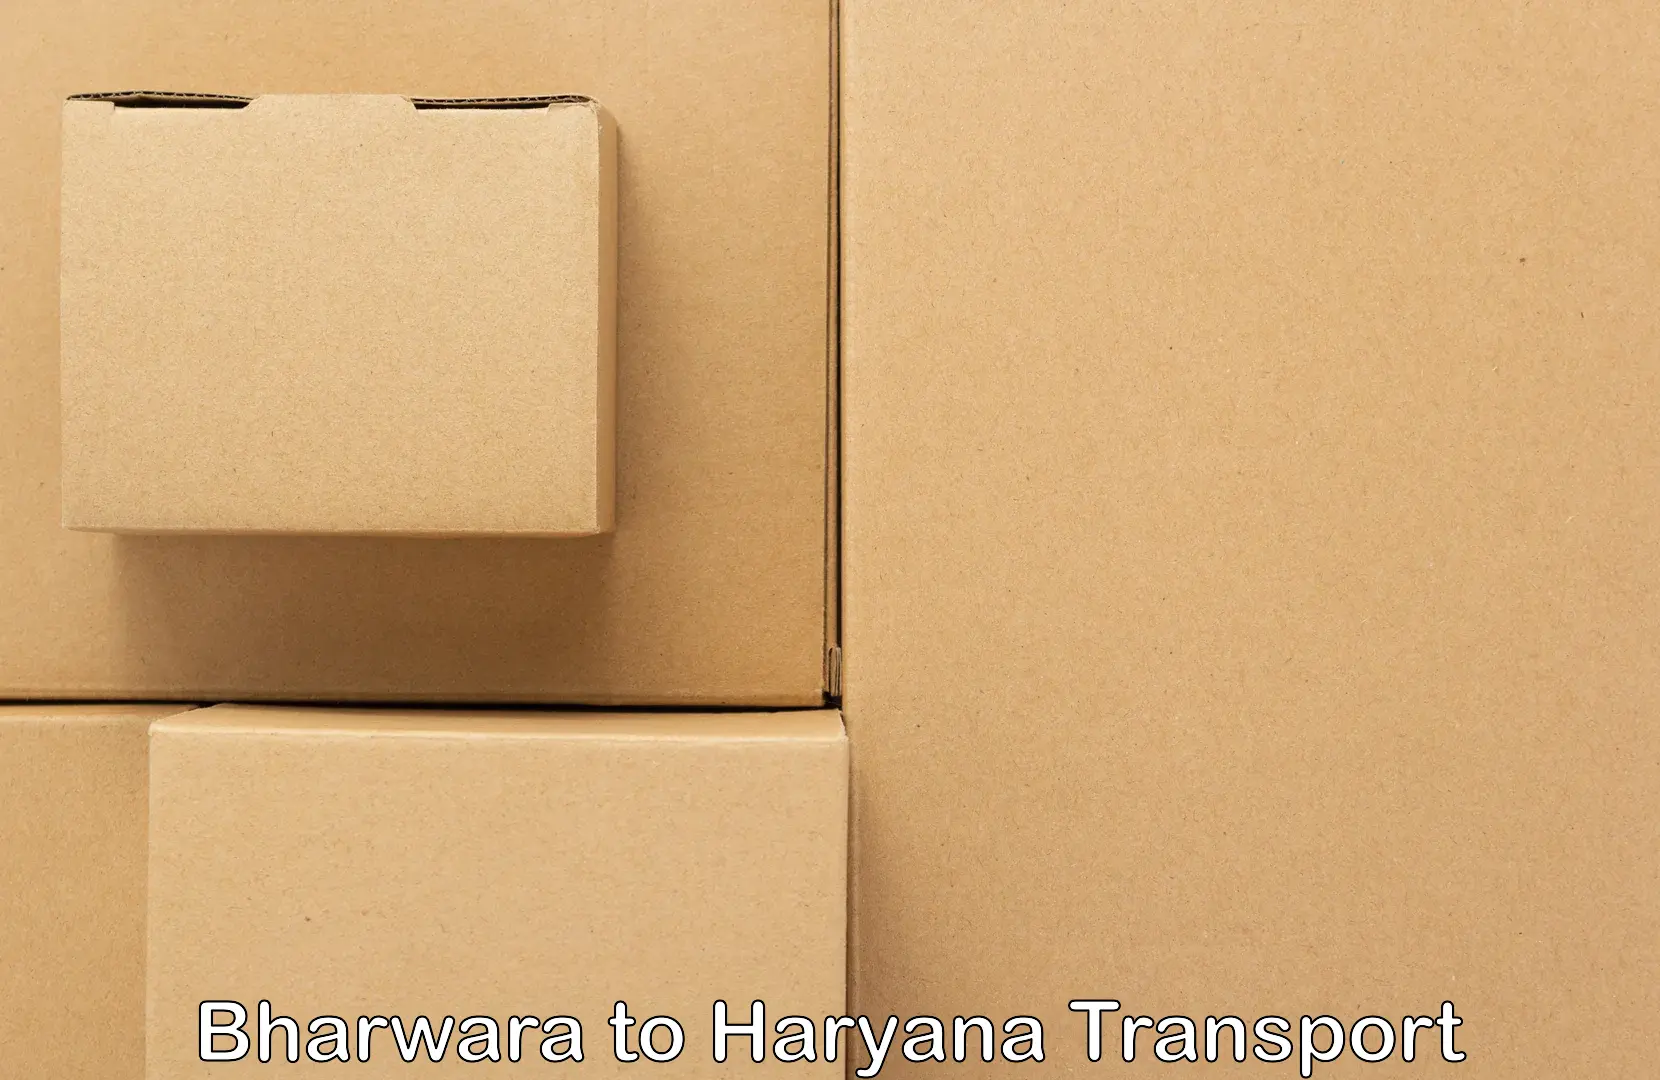 Nearest transport service Bharwara to Assandh